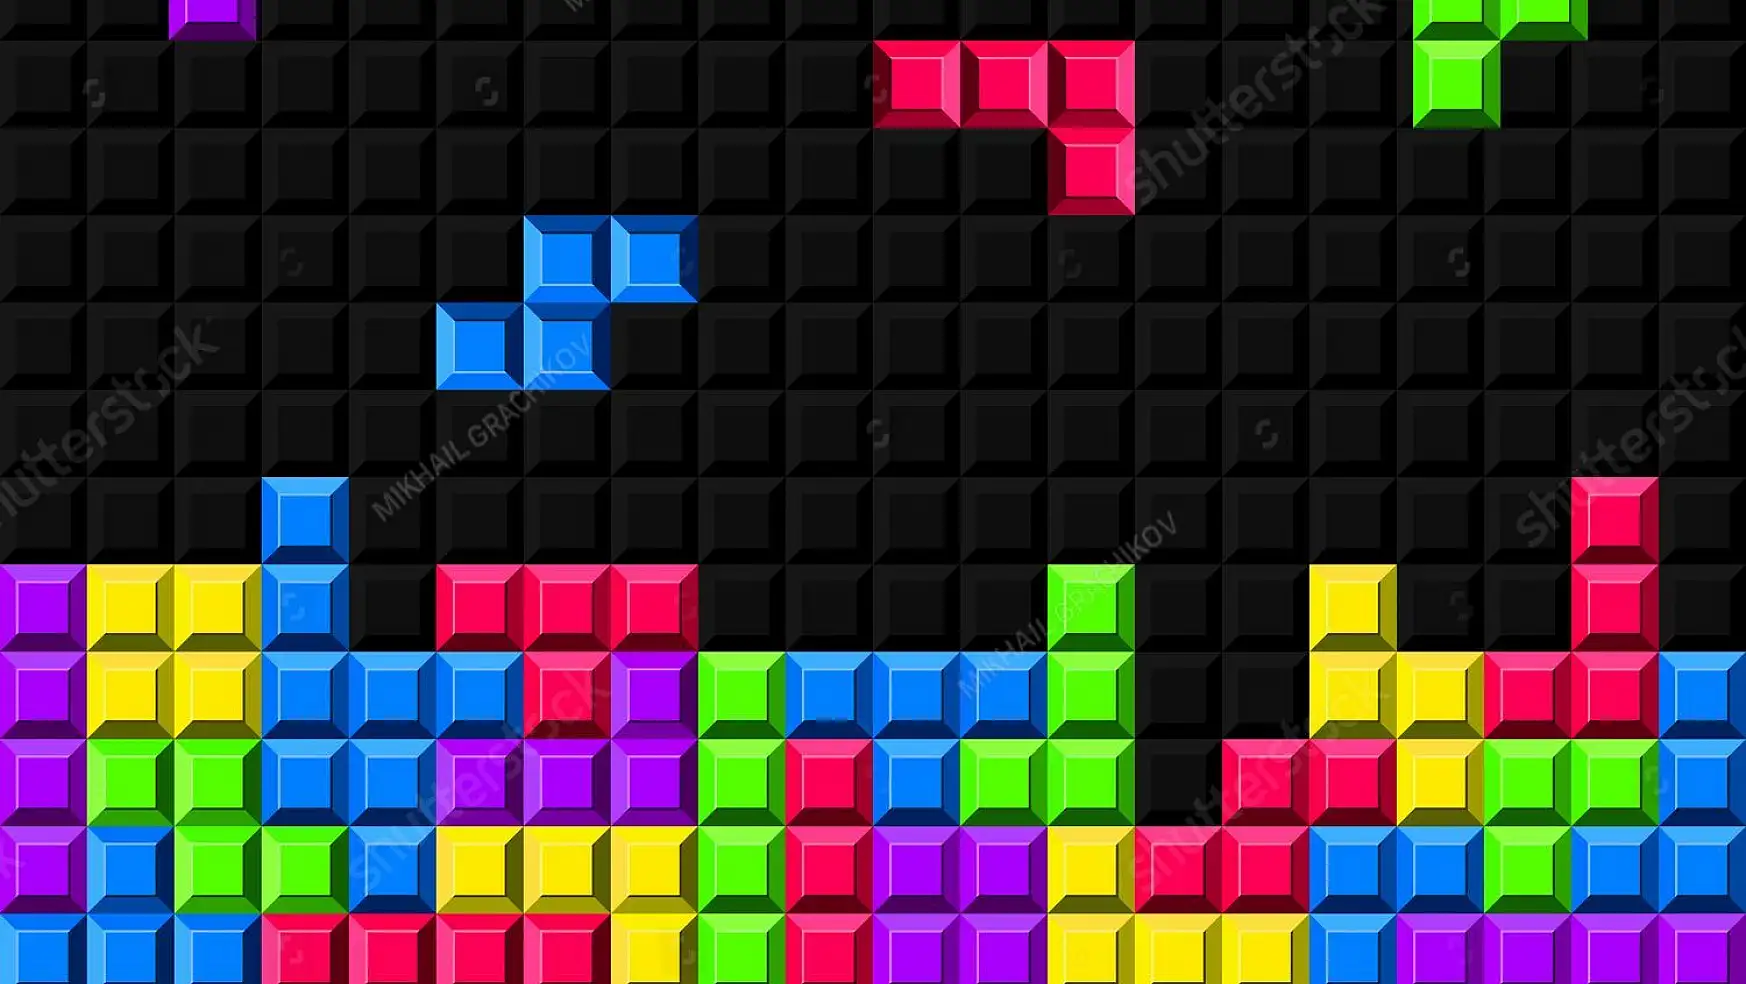 Tetris oyununu bitiren ilk kişi kim?